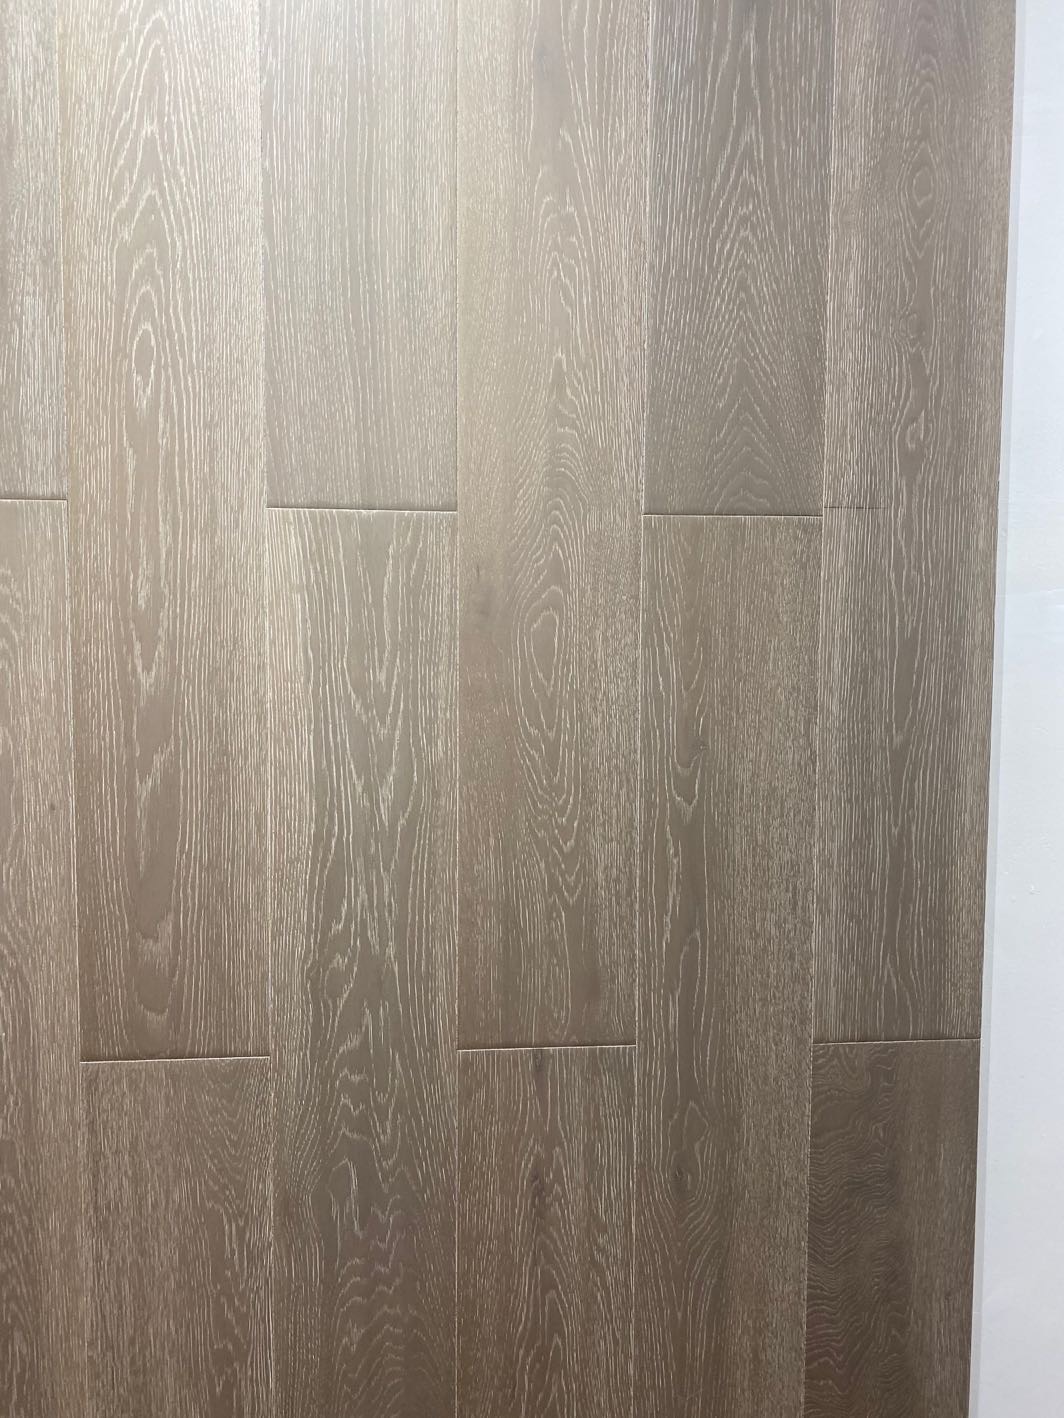 莫干山纯实木地板家用卧室客厅木地板实木系列白栎木仿古系列产品图